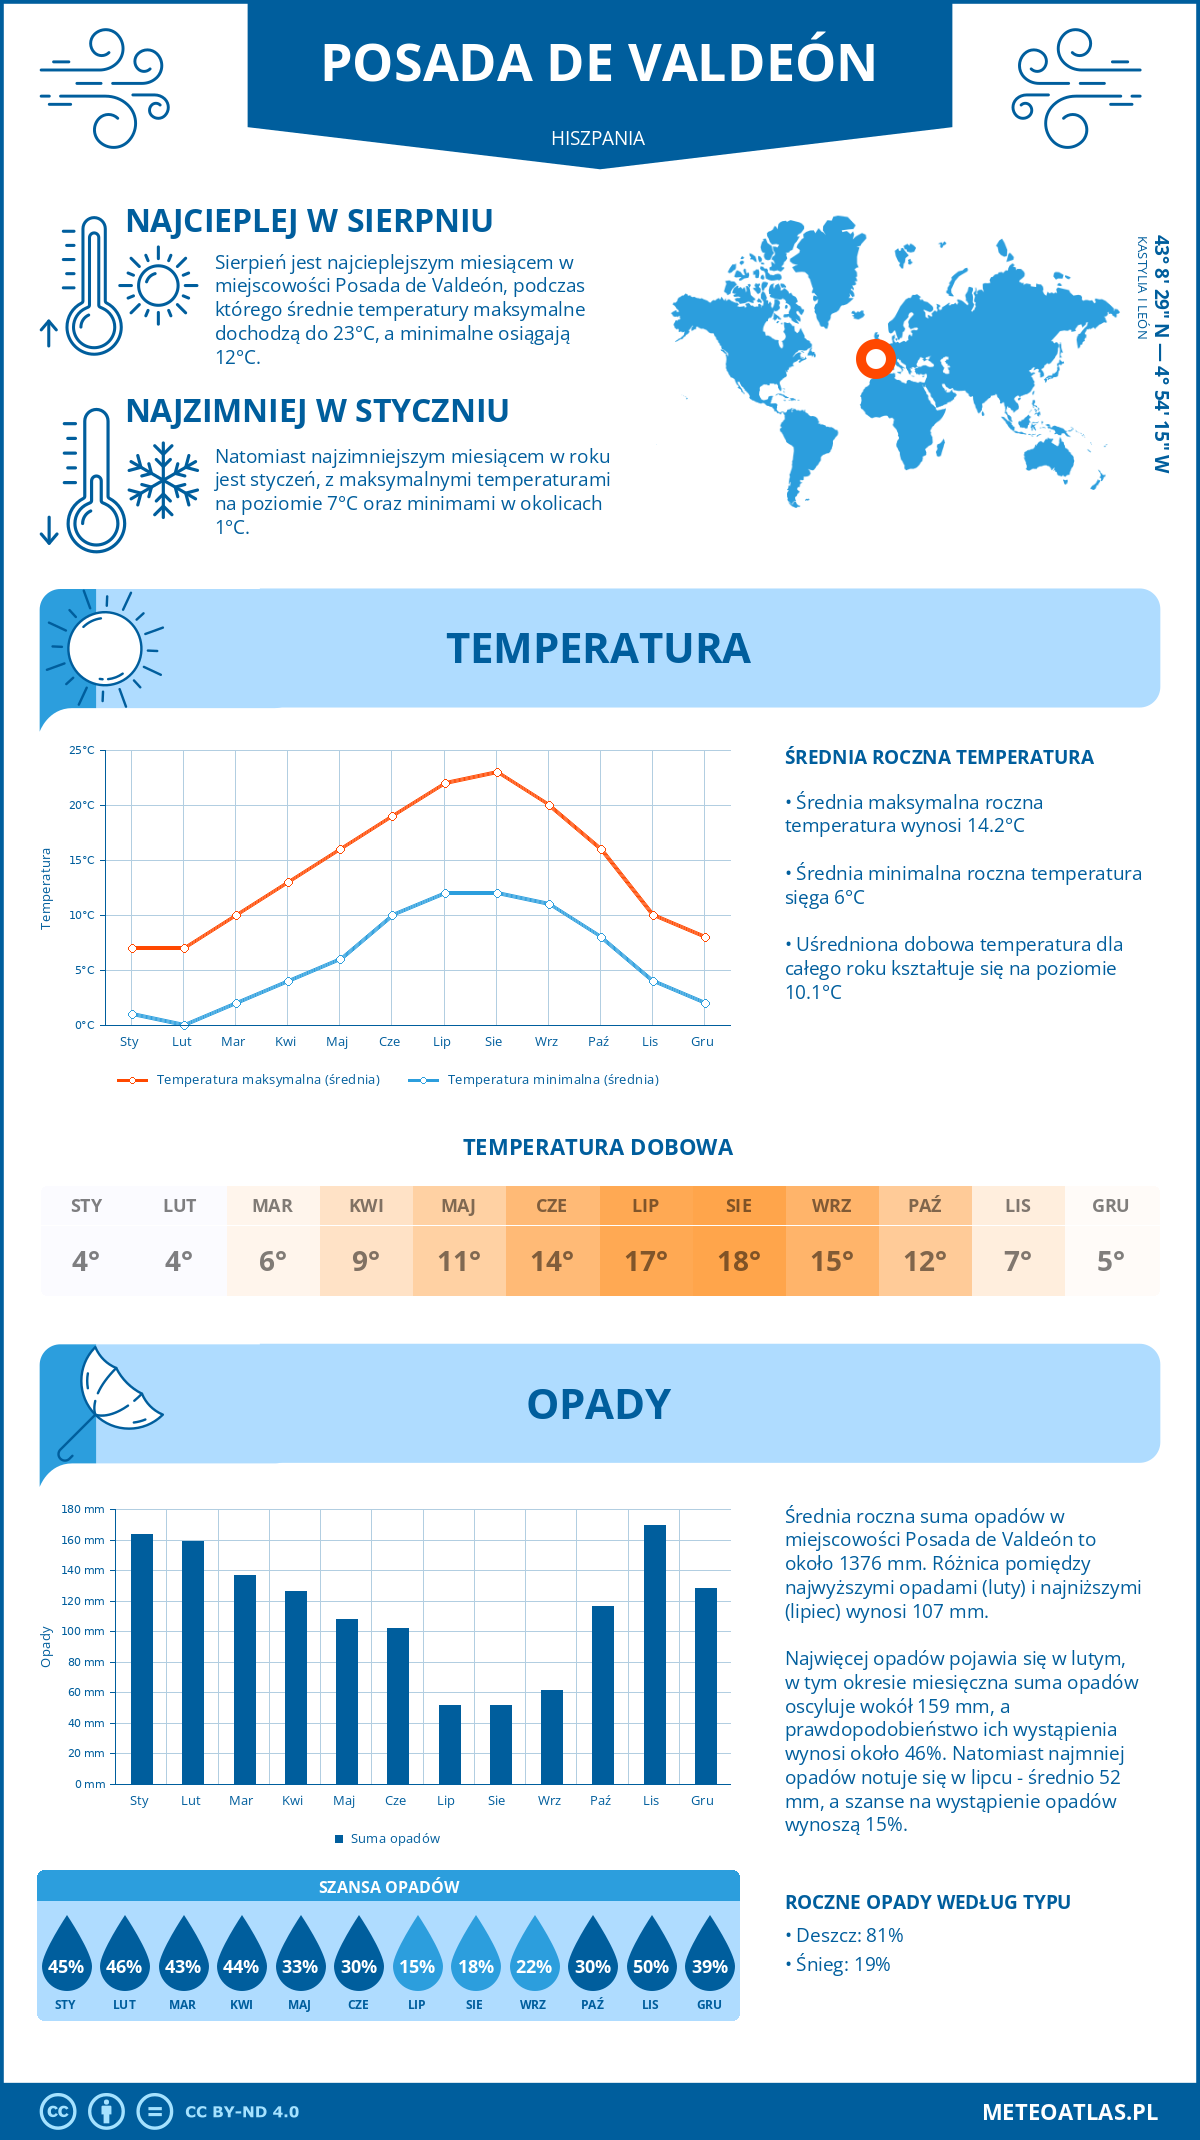 Pogoda Posada de Valdeón (Hiszpania). Temperatura oraz opady.